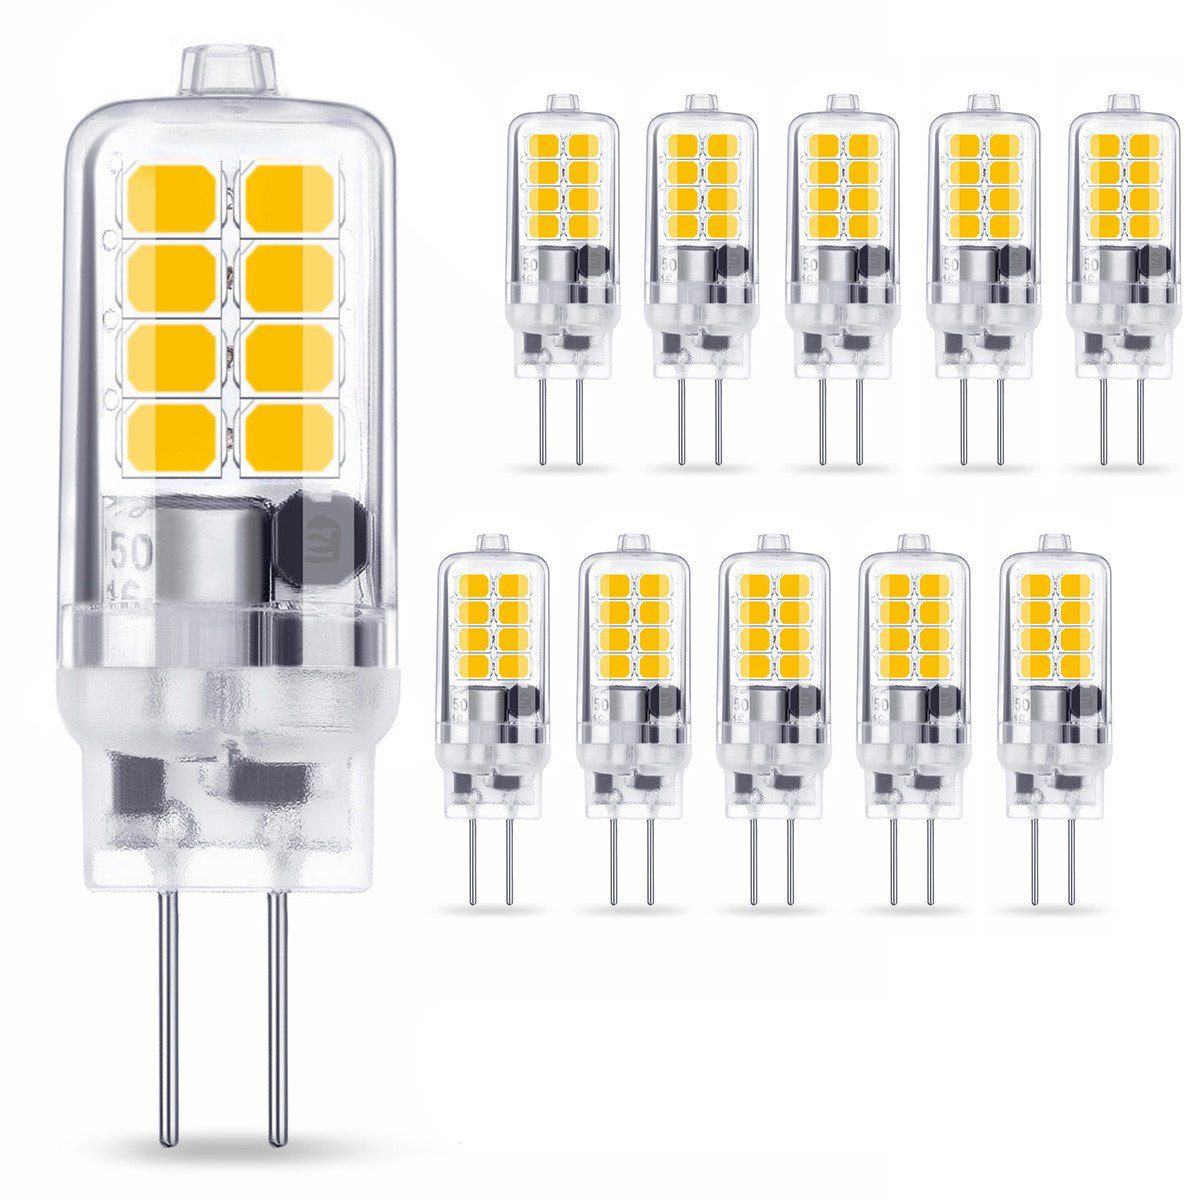 10x 3000k Energiesparlampen Leuchtmittel LED LED Insma Flutlichtstrahler, G4 Birne Halogenlampe,3W